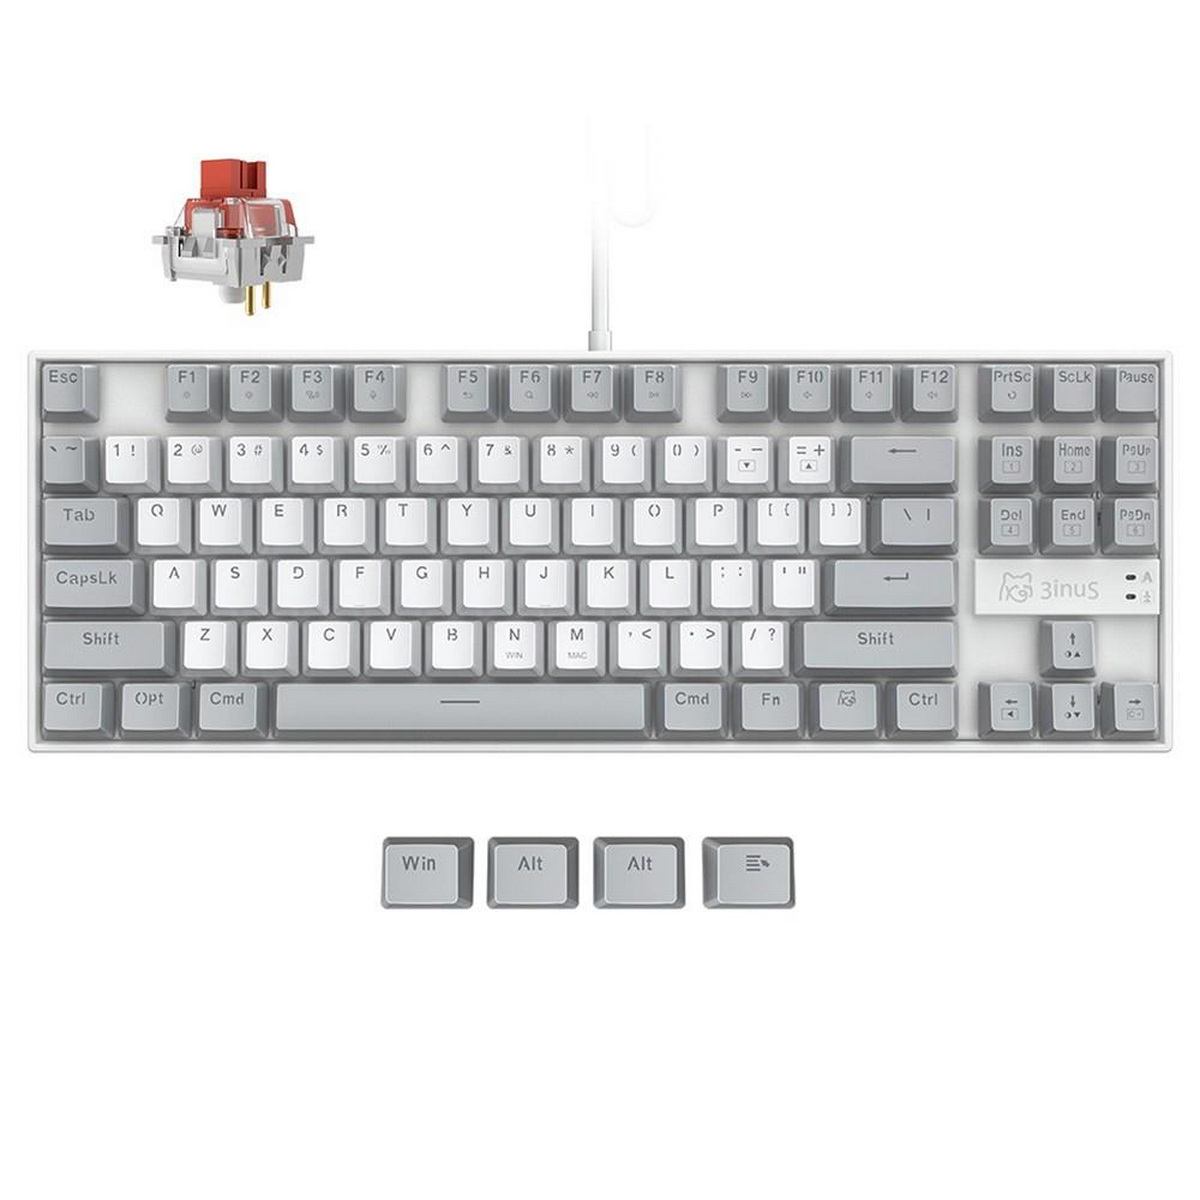 EE01 KEBOHUB Klickende 3INUS rote Schalter, Tastatur